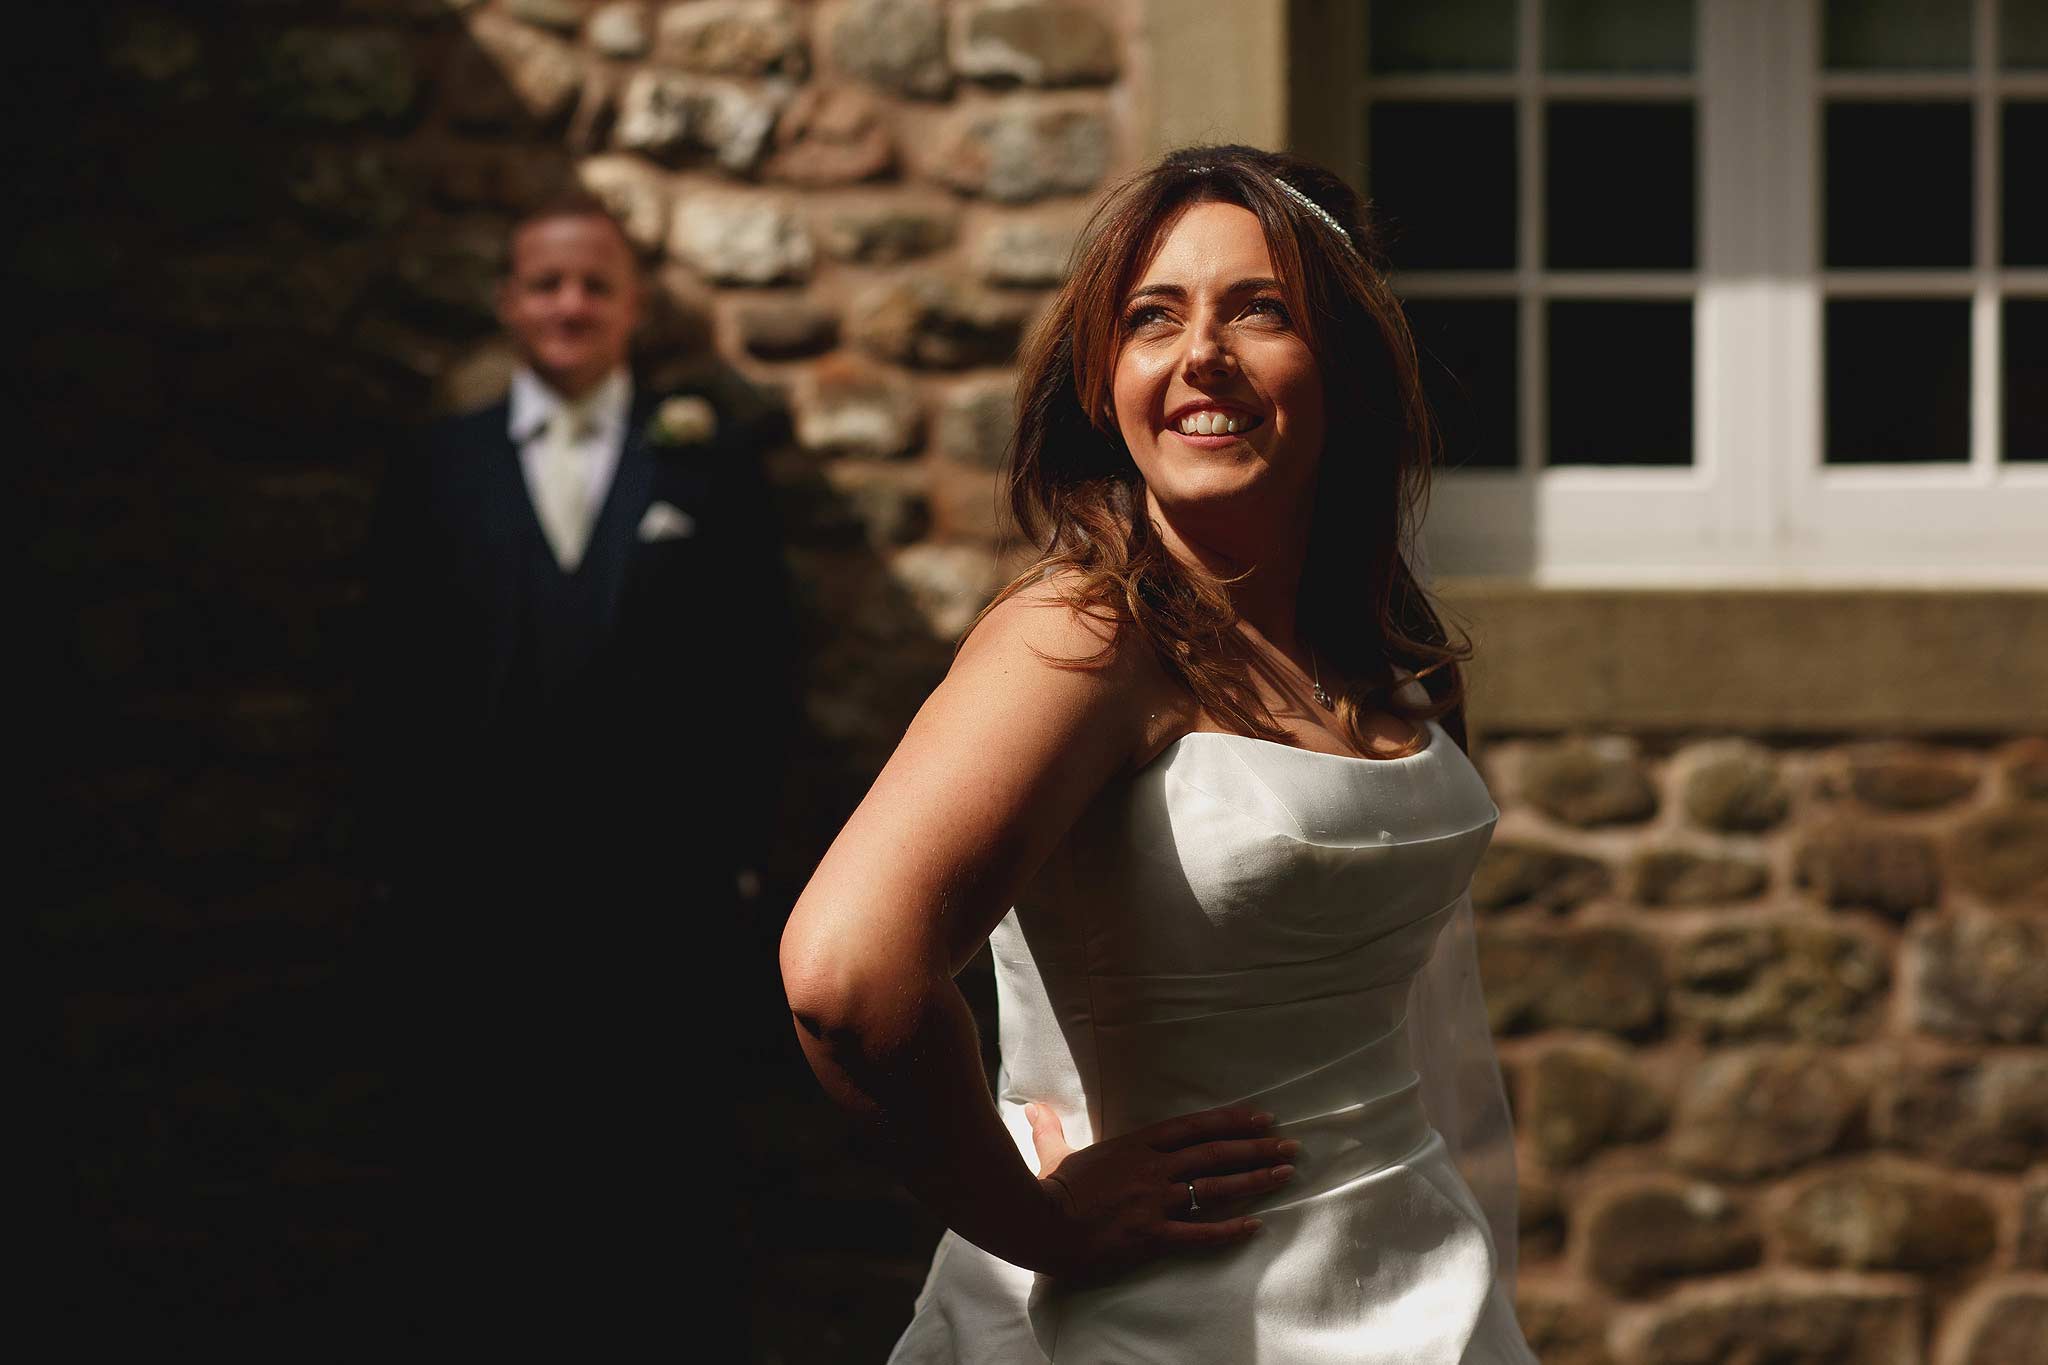 Creative Inn at Whitewell wedding photographs using harsh lighting.